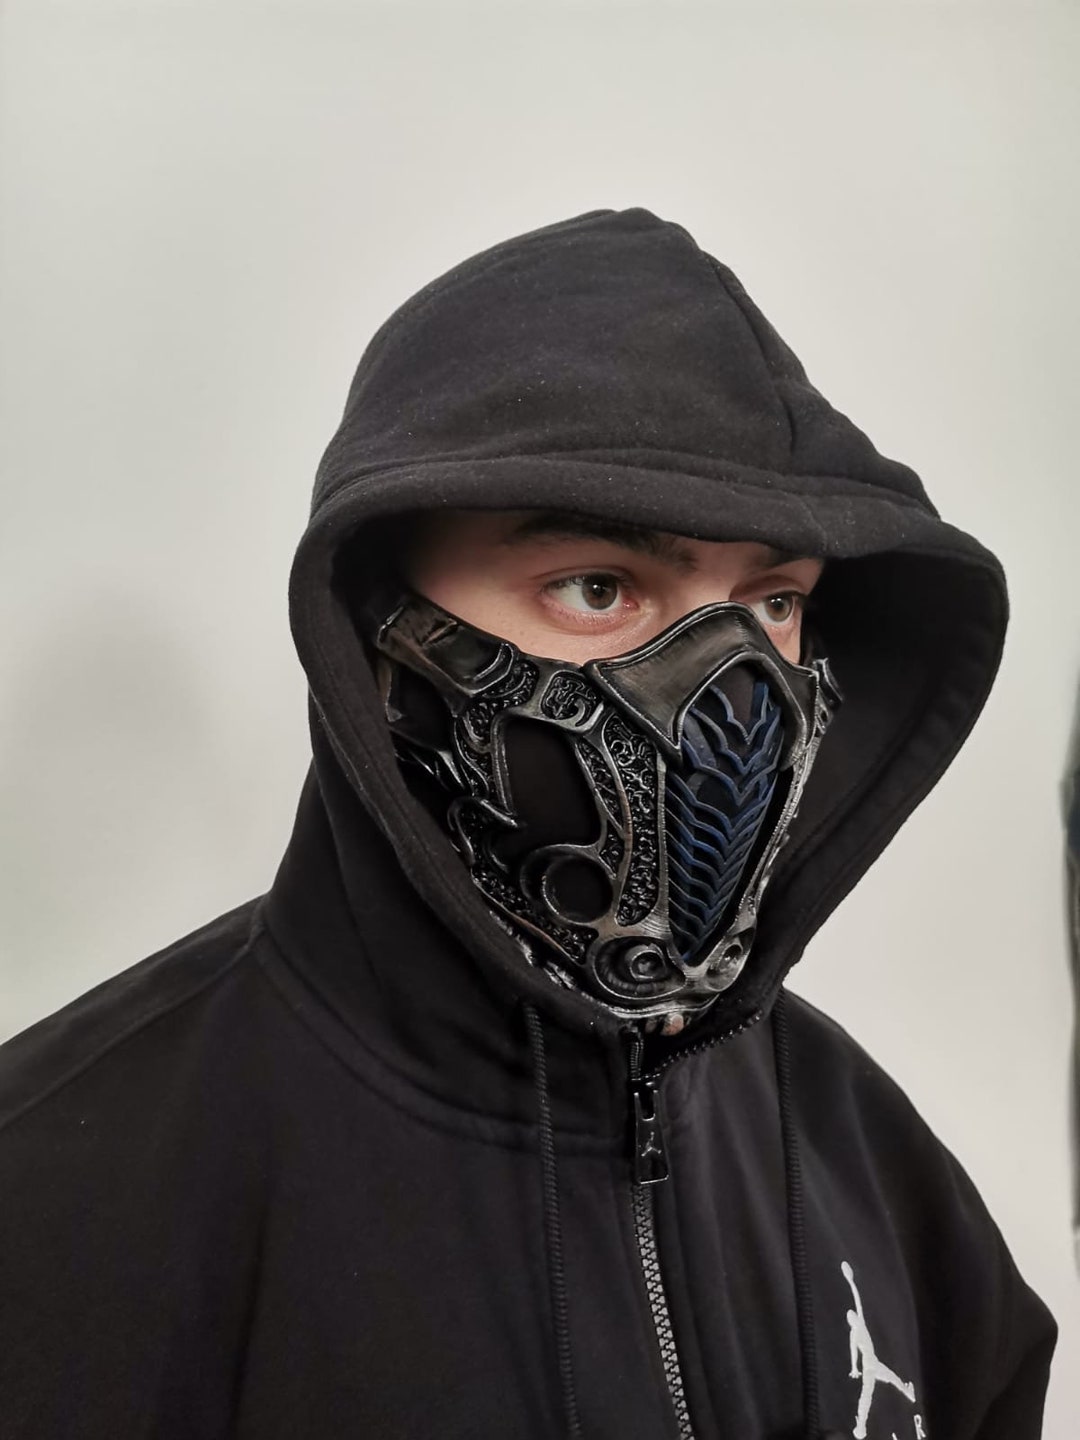 Sub-zero Mask, Mortal Kombat 2021 Movie - Etsy